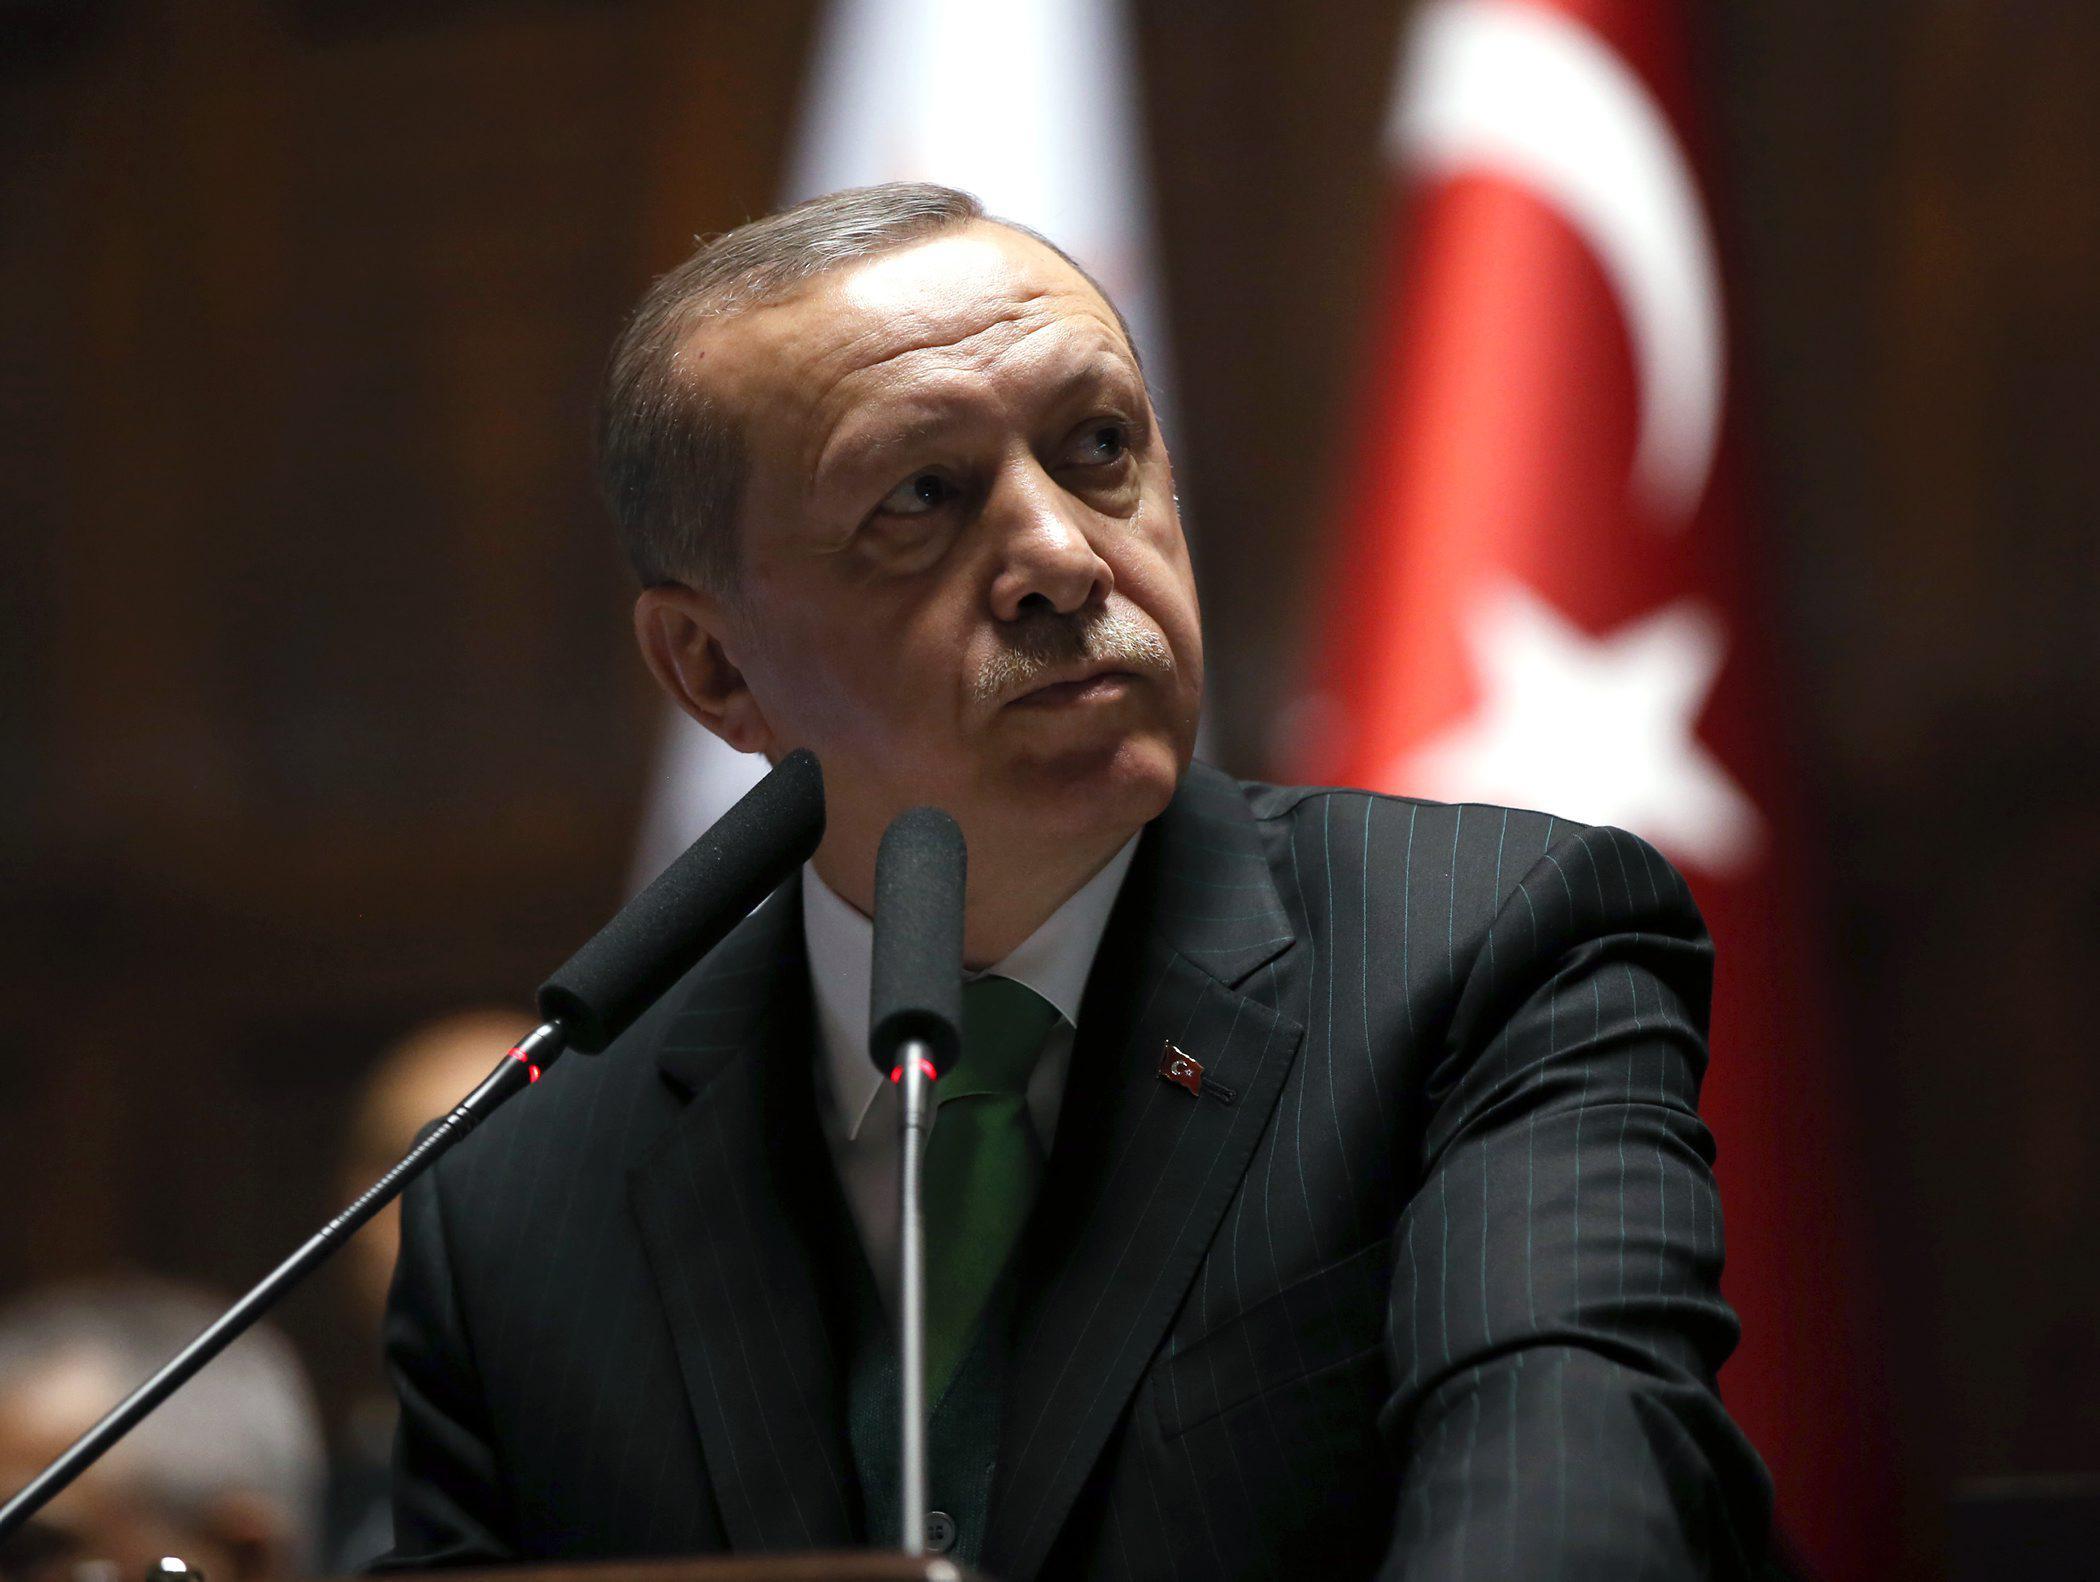 Canlı | Cumhurbaşkanı Erdoğan, Kemal Kılıçdaroğlu'na verdi veriştirdi! Böyle bir rezilliğe, kepazeliğe, ahlaksızlığa izin veremeyiz.